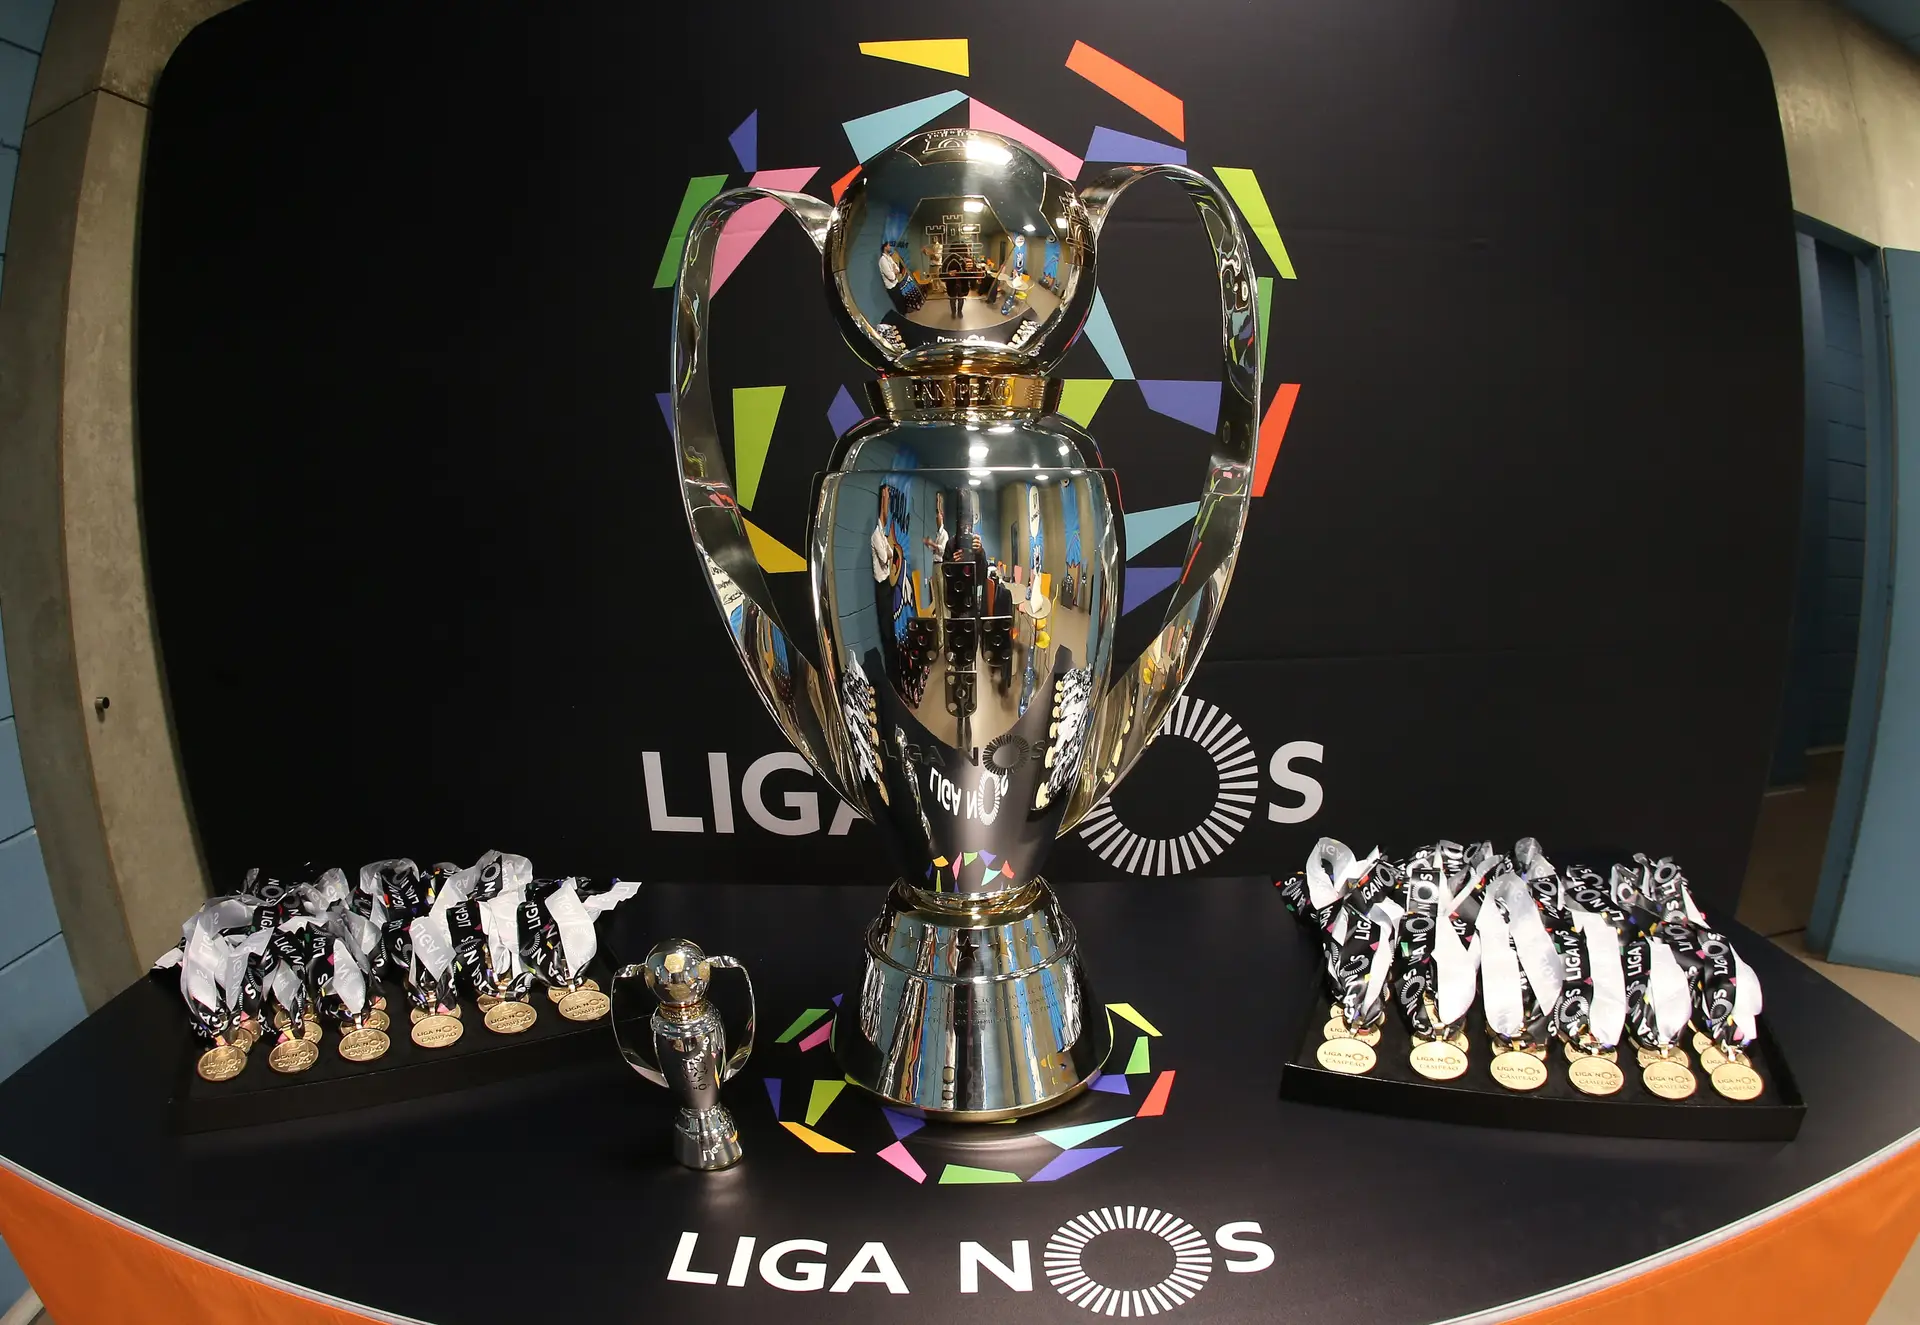 Da Liga ao Campeonato de Portugal: tudo o que há para decidir